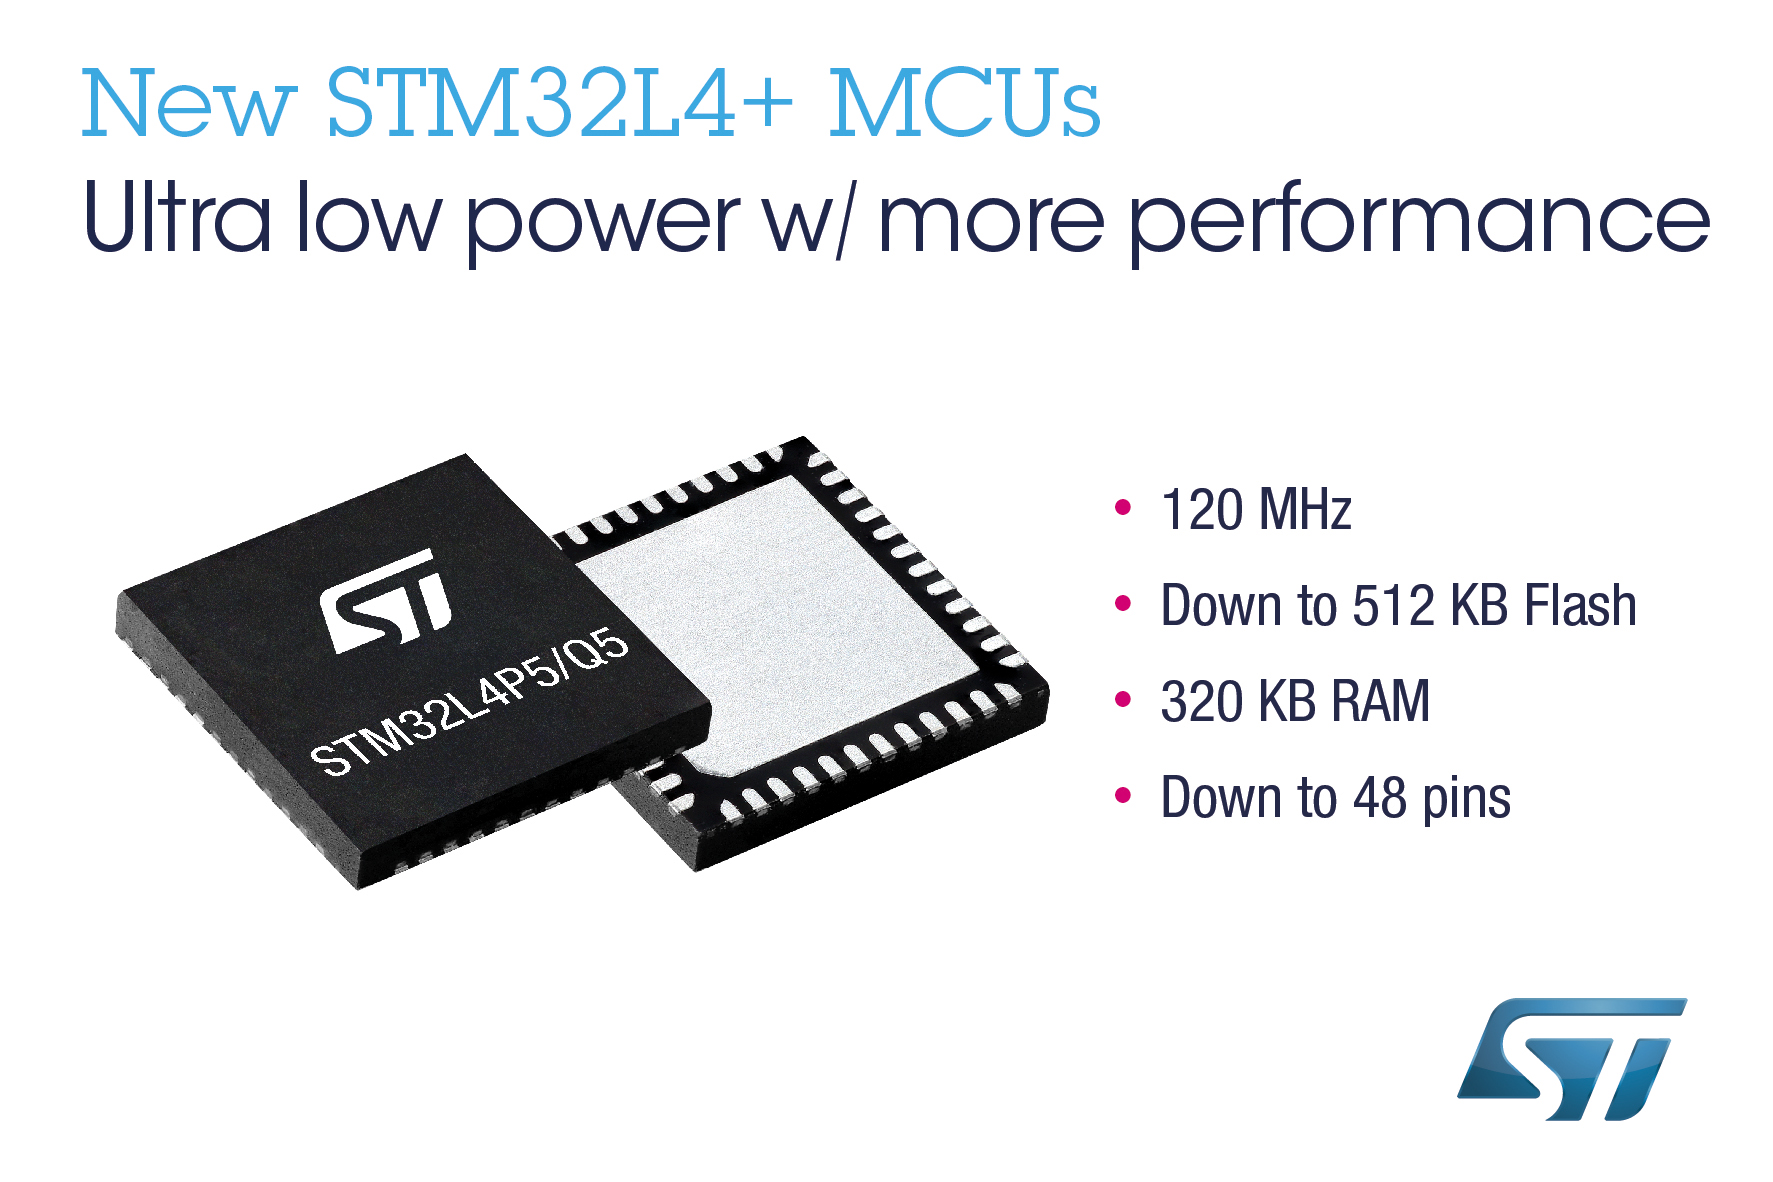 STマイクロエレクトロニクス、スマートな組込み機器向けに低消費電力・低コストのSTM32L4+マイコンを発表